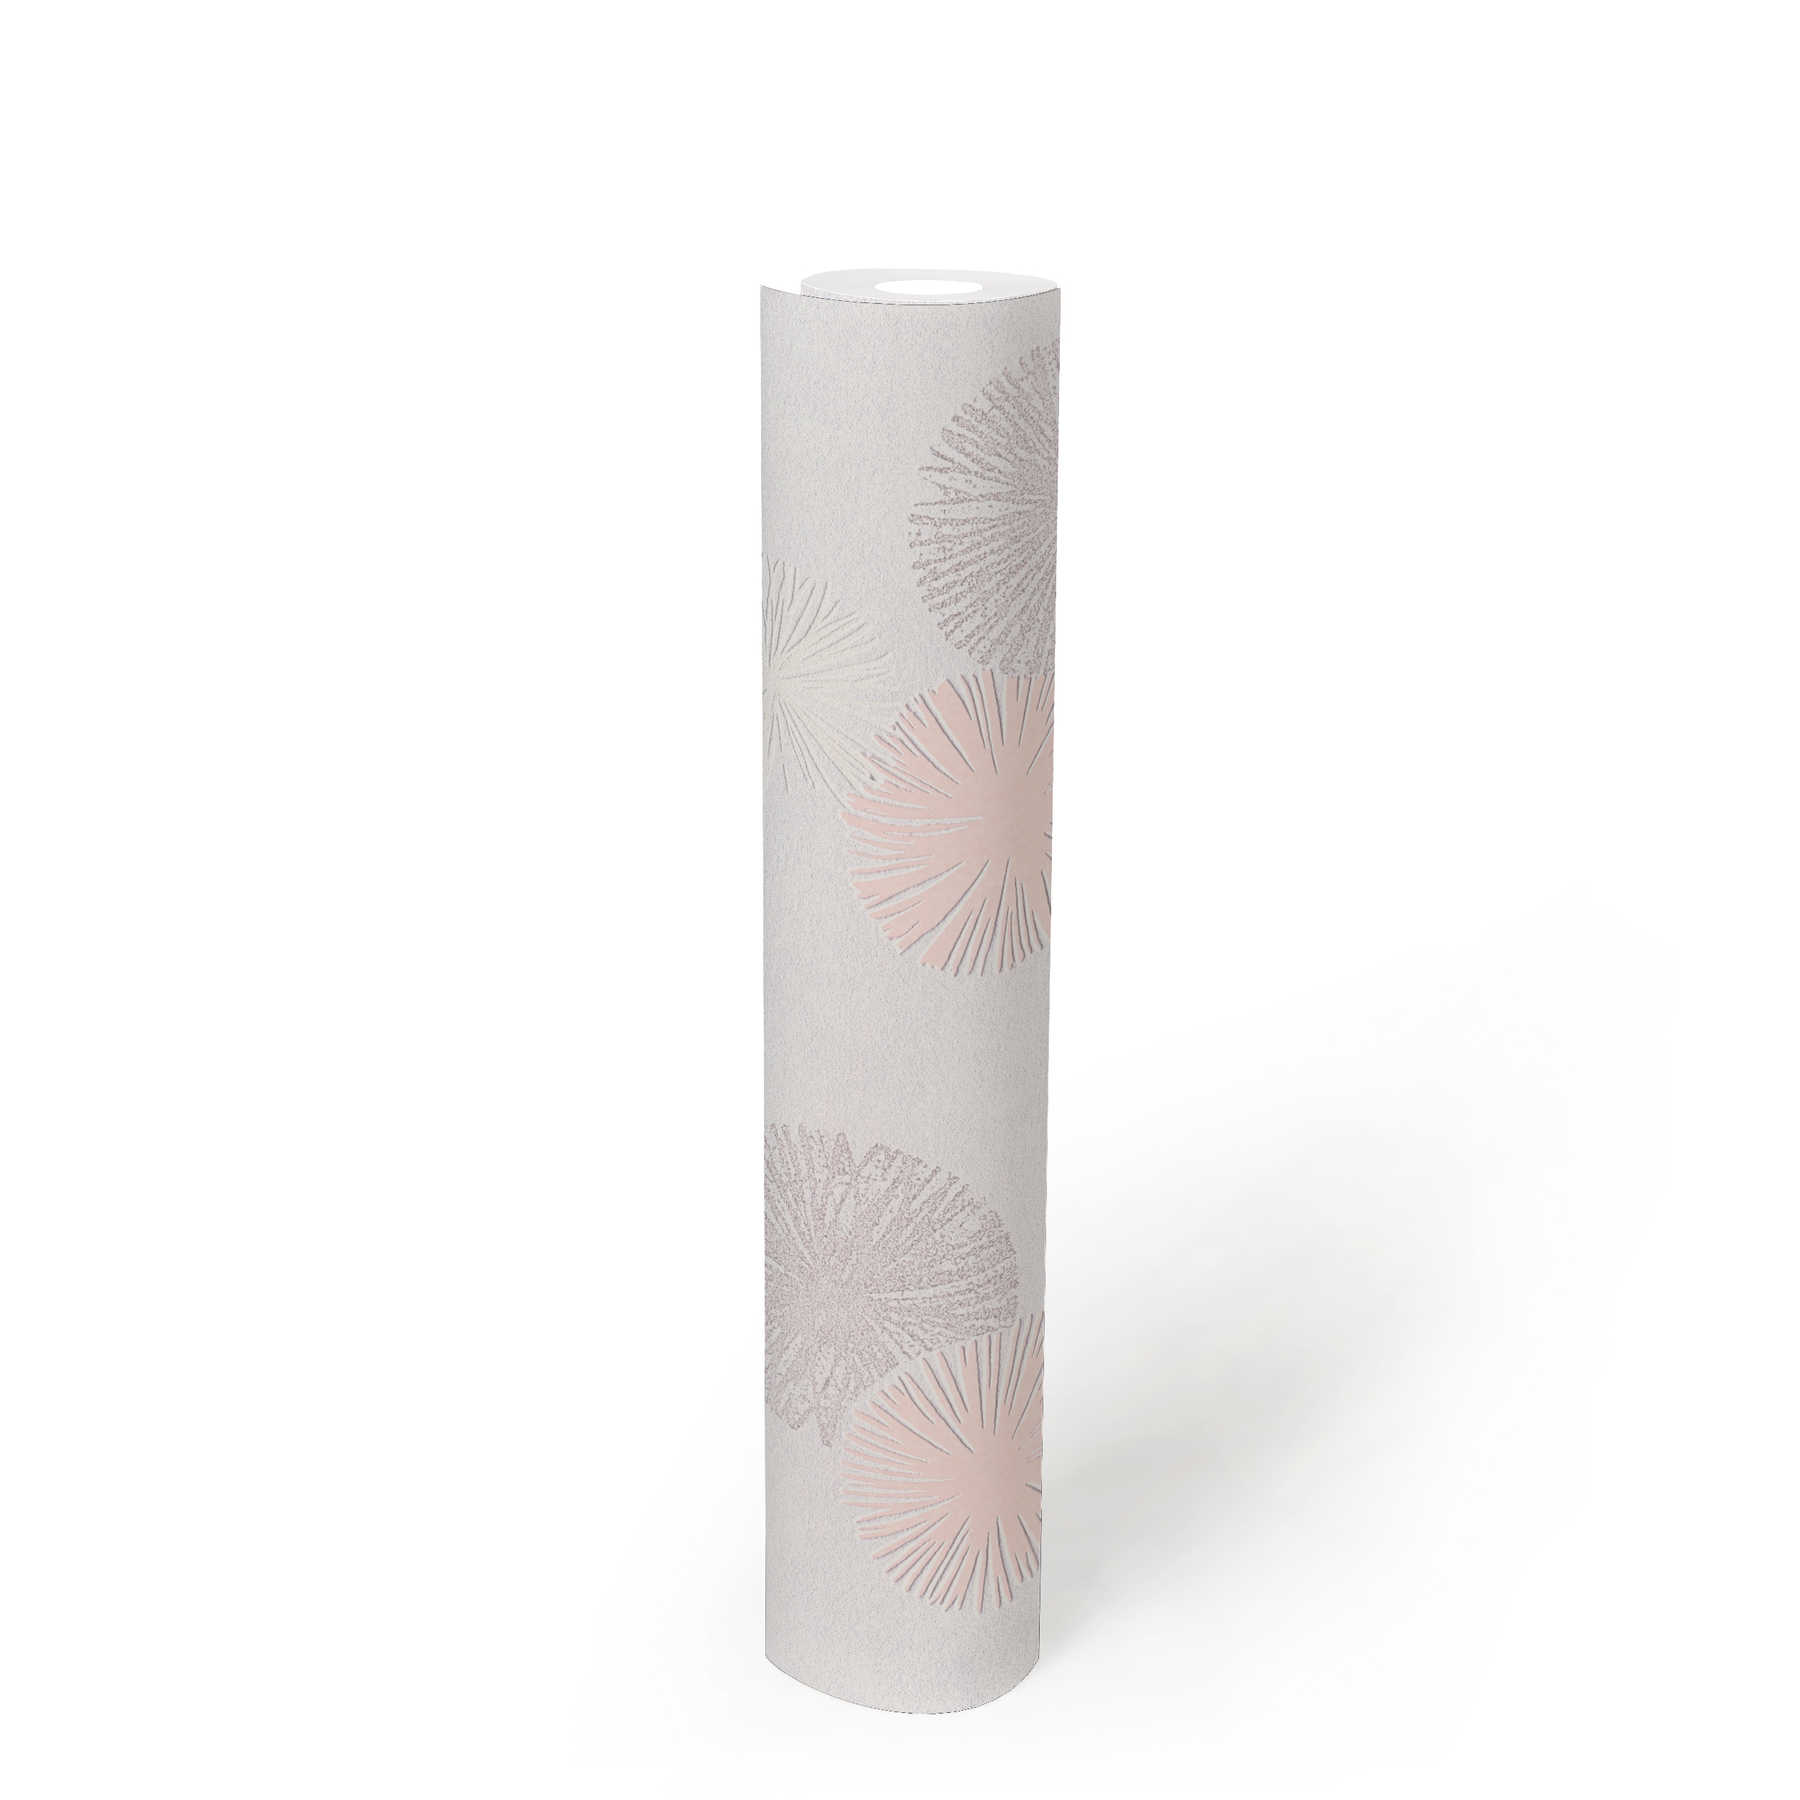             Papier peint texturé avec motif graphique - crème, métallisé, rose
        